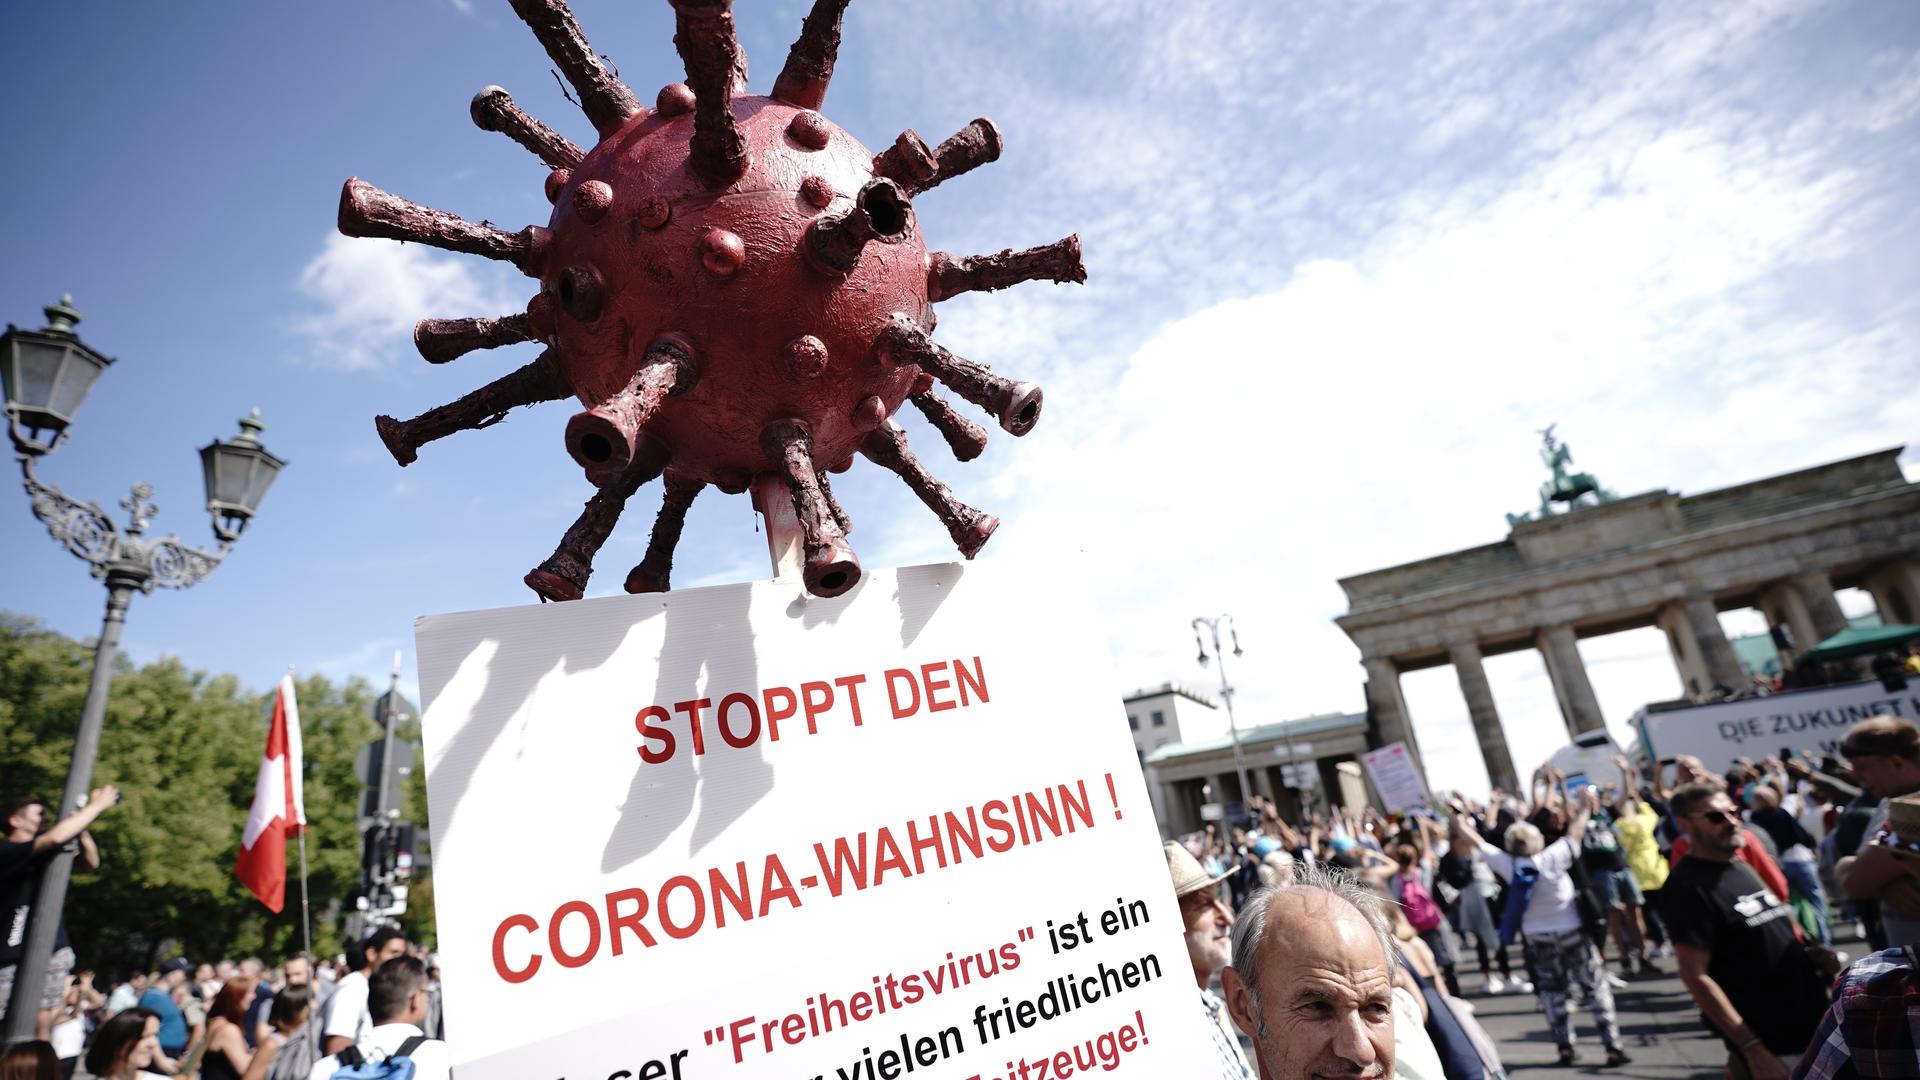 Ein Thema, dass keinen gleichgültig lässt: In den vergangenen Monaten gab es immer wieder Demonstrationen in Deutschland gegen die Corona-Maßnahmen, wie hier in Berlin.